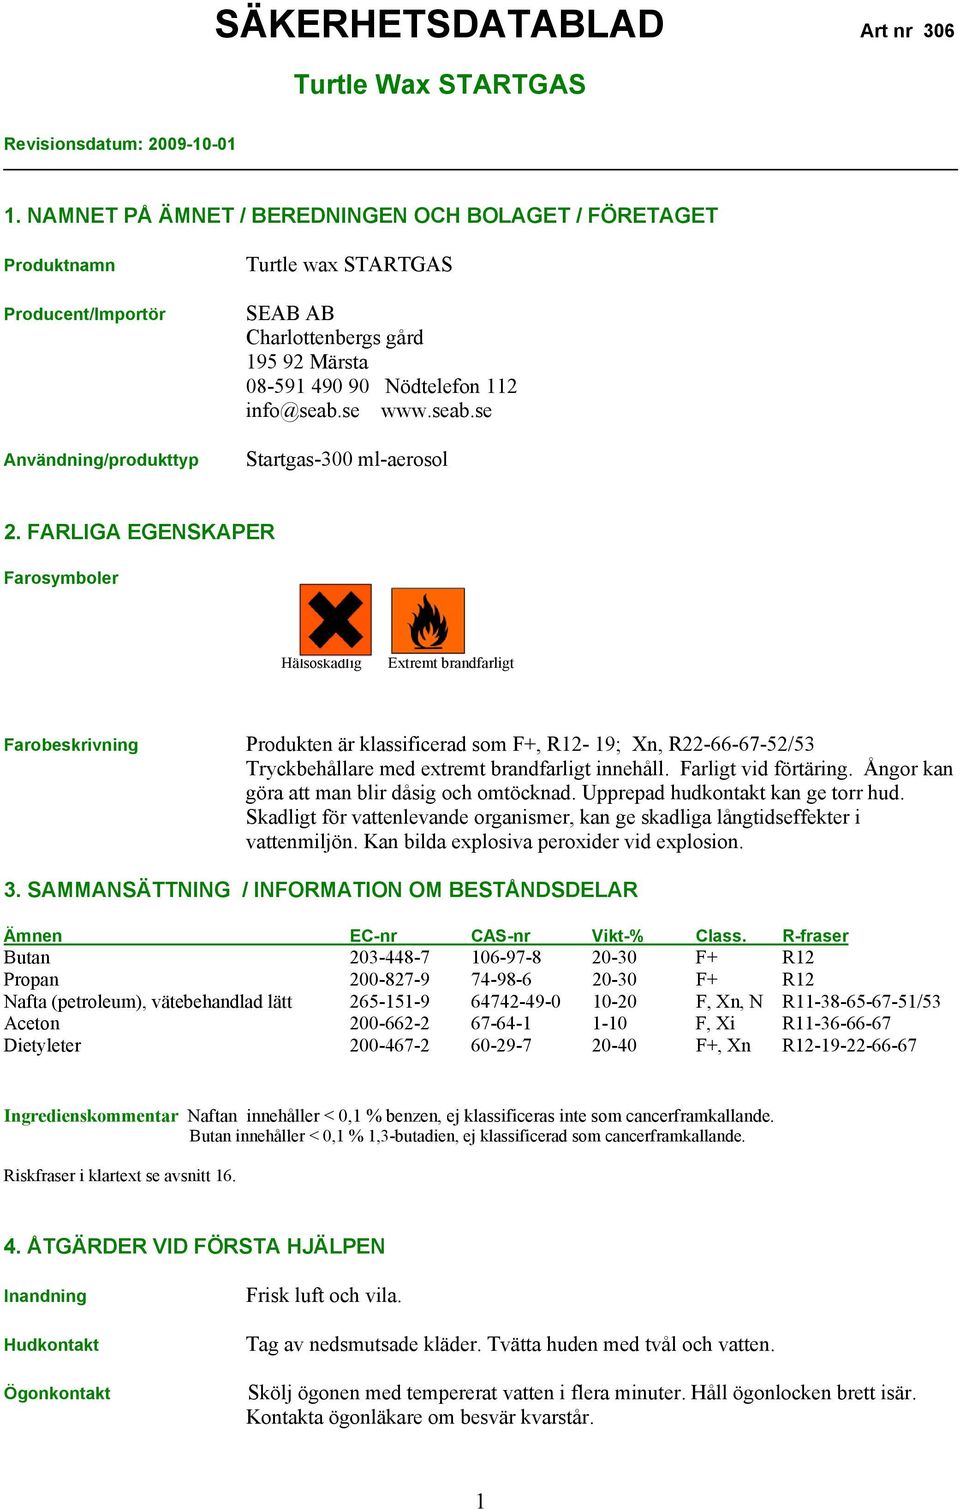 FARLIGA EGENSKAPER Farosymboler Hälsoskadlig Extremt brandfarligt Farobeskrivning Produkten är klassificerad som F+, R12-19; Xn, R22-66-67-52/53 Tryckbehållare med extremt brandfarligt innehåll.